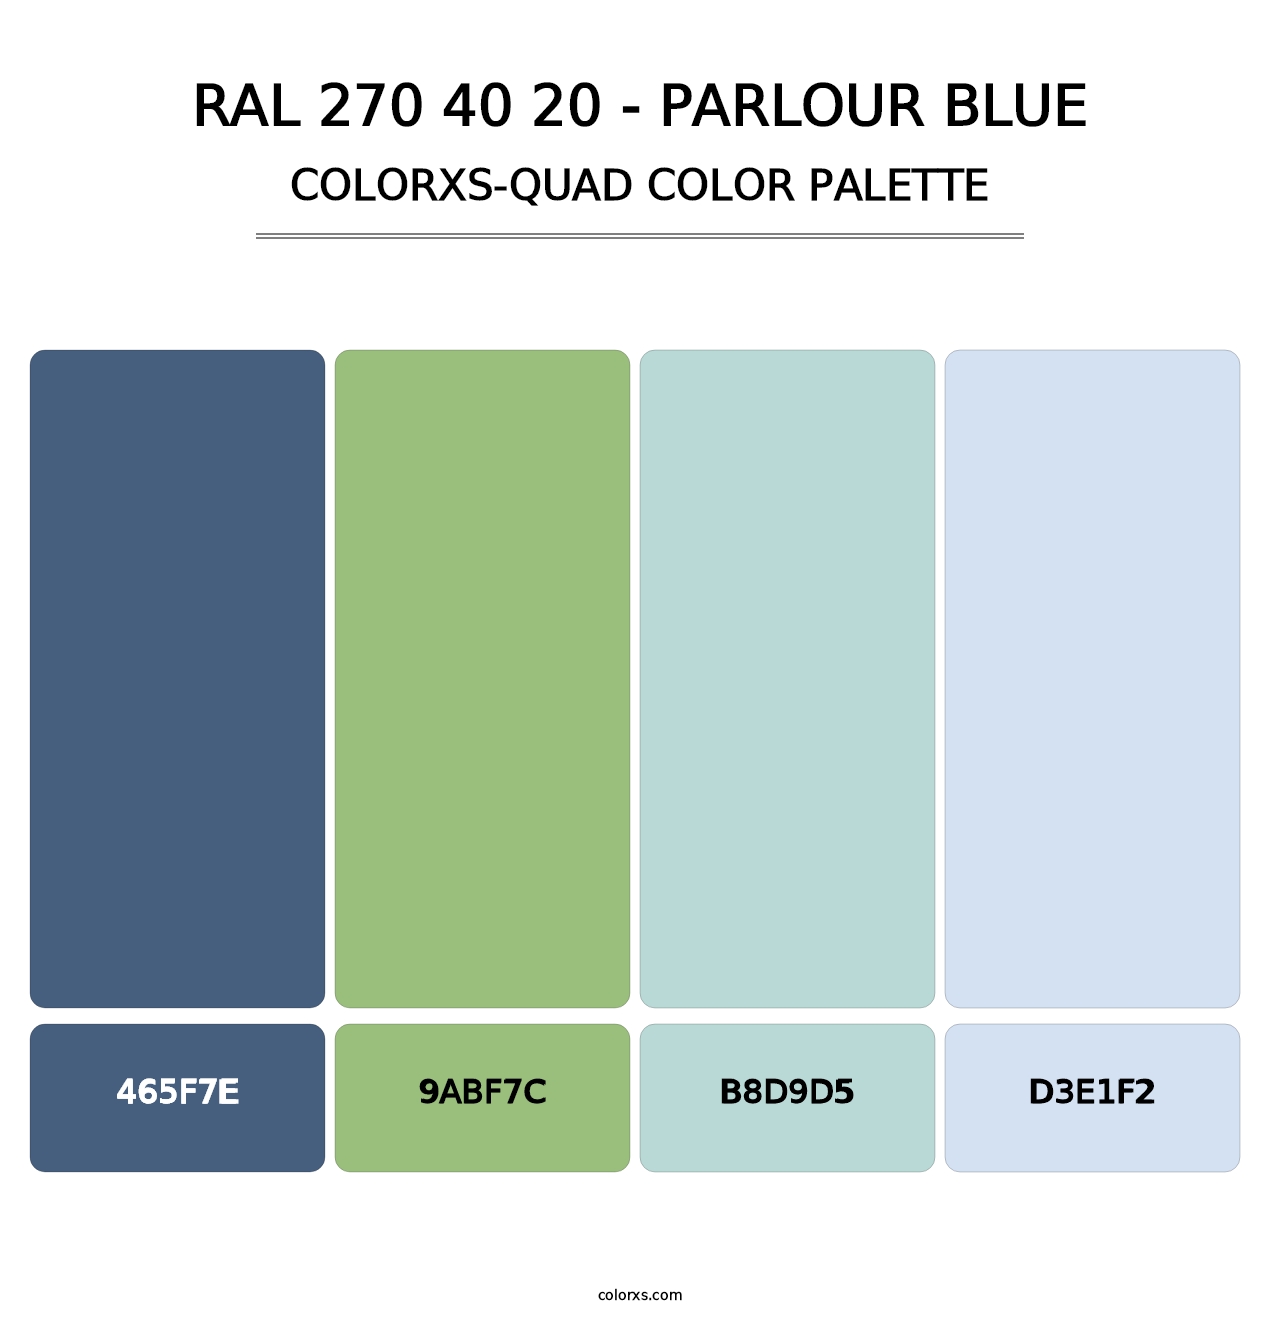 RAL 270 40 20 - Parlour Blue - Colorxs Quad Palette